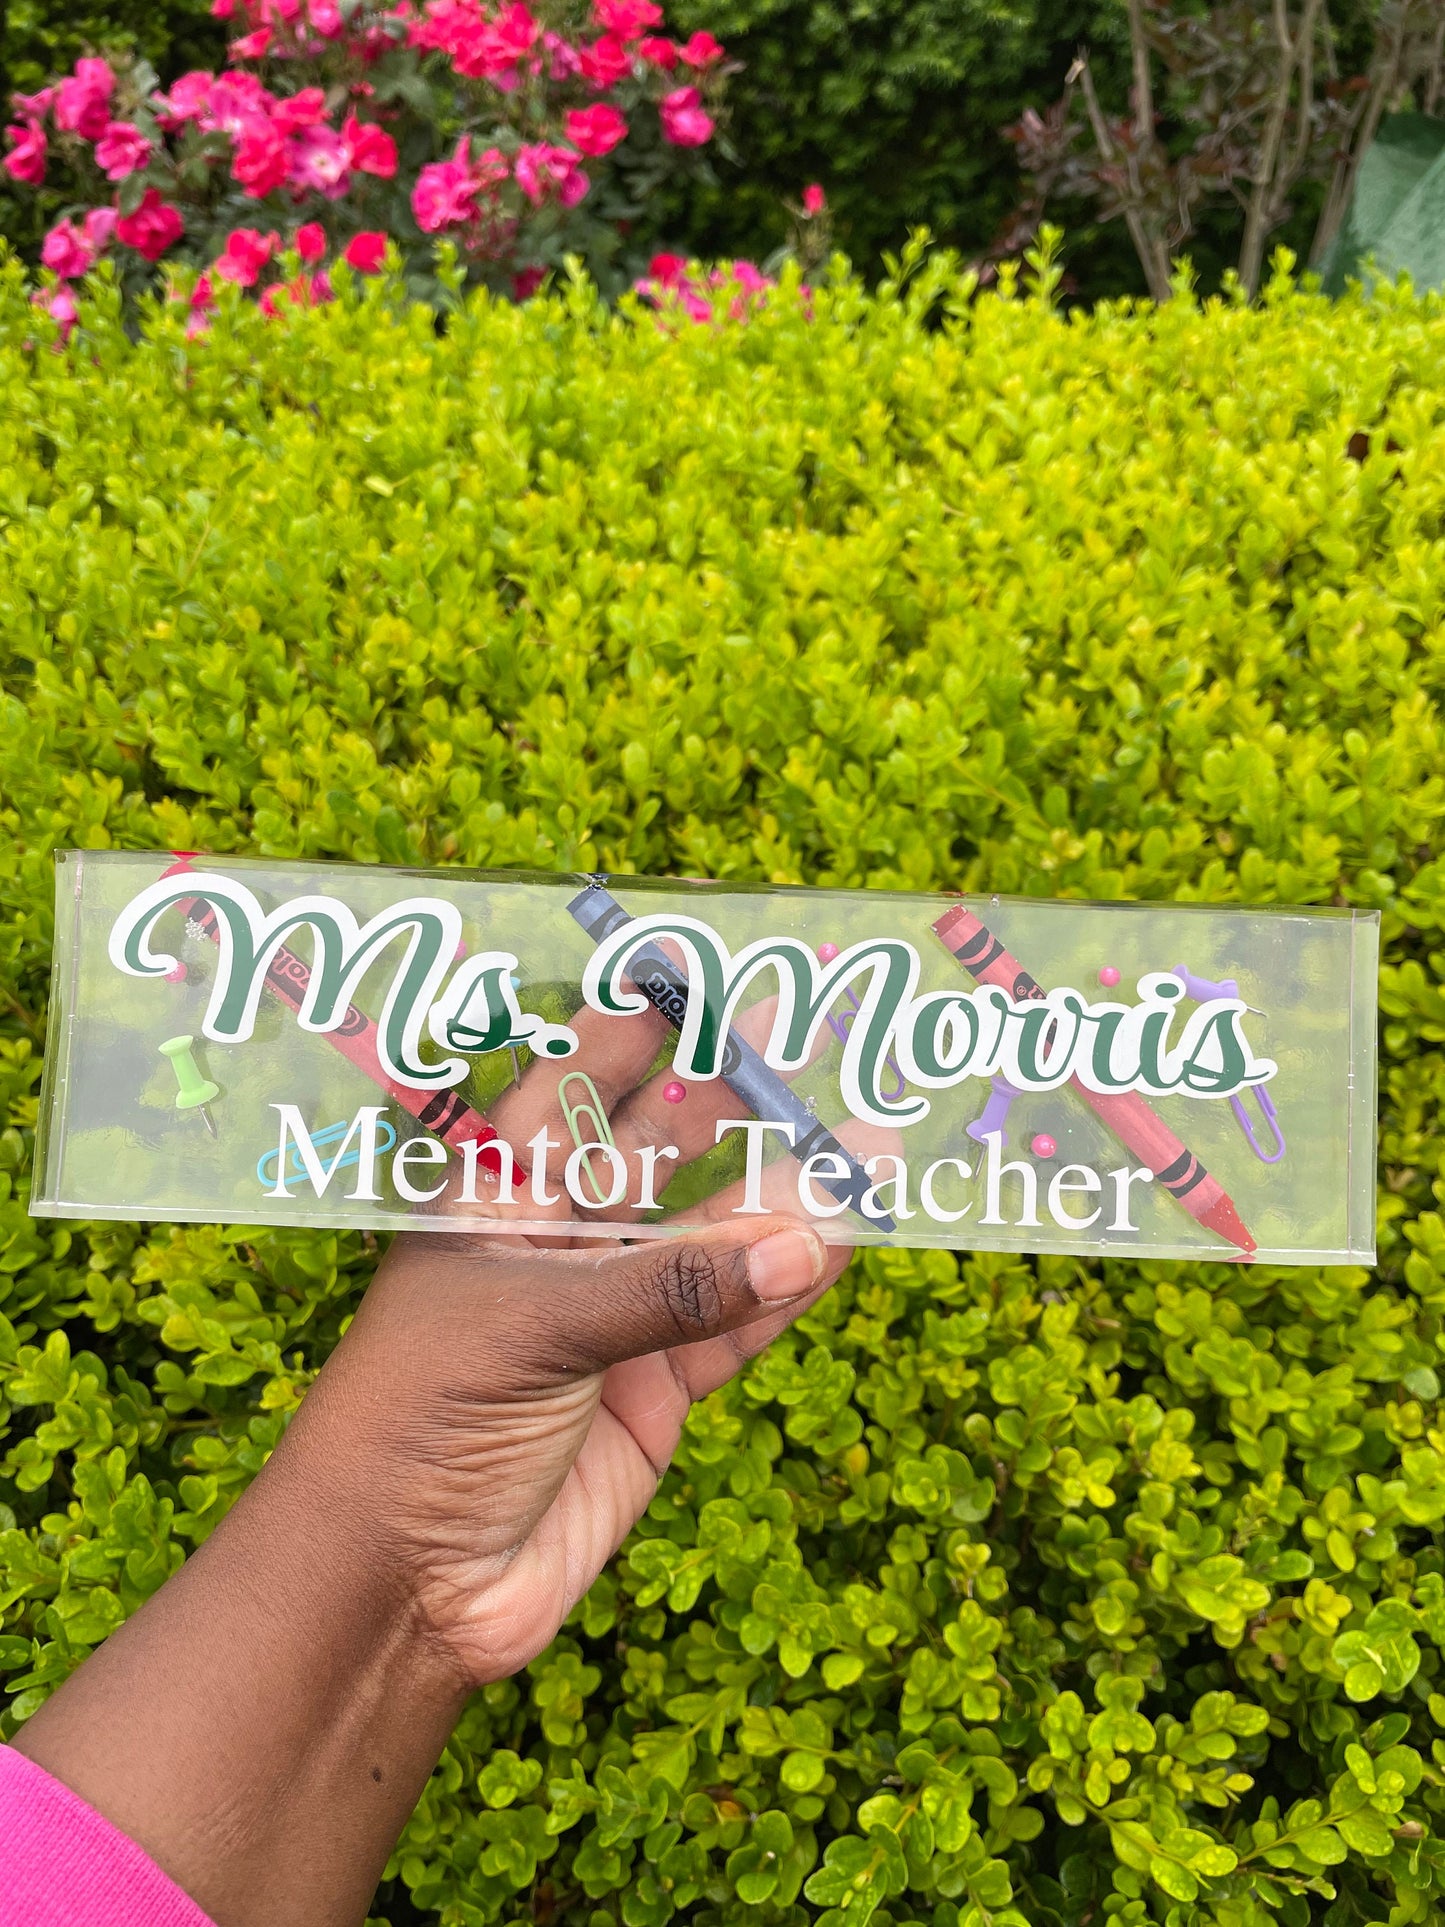 Personalized Teacher Name Plate | Teacher Gift | Teacher Gift Personalized | School | Teacher | Gift | Personalized Gift | Custom Gift